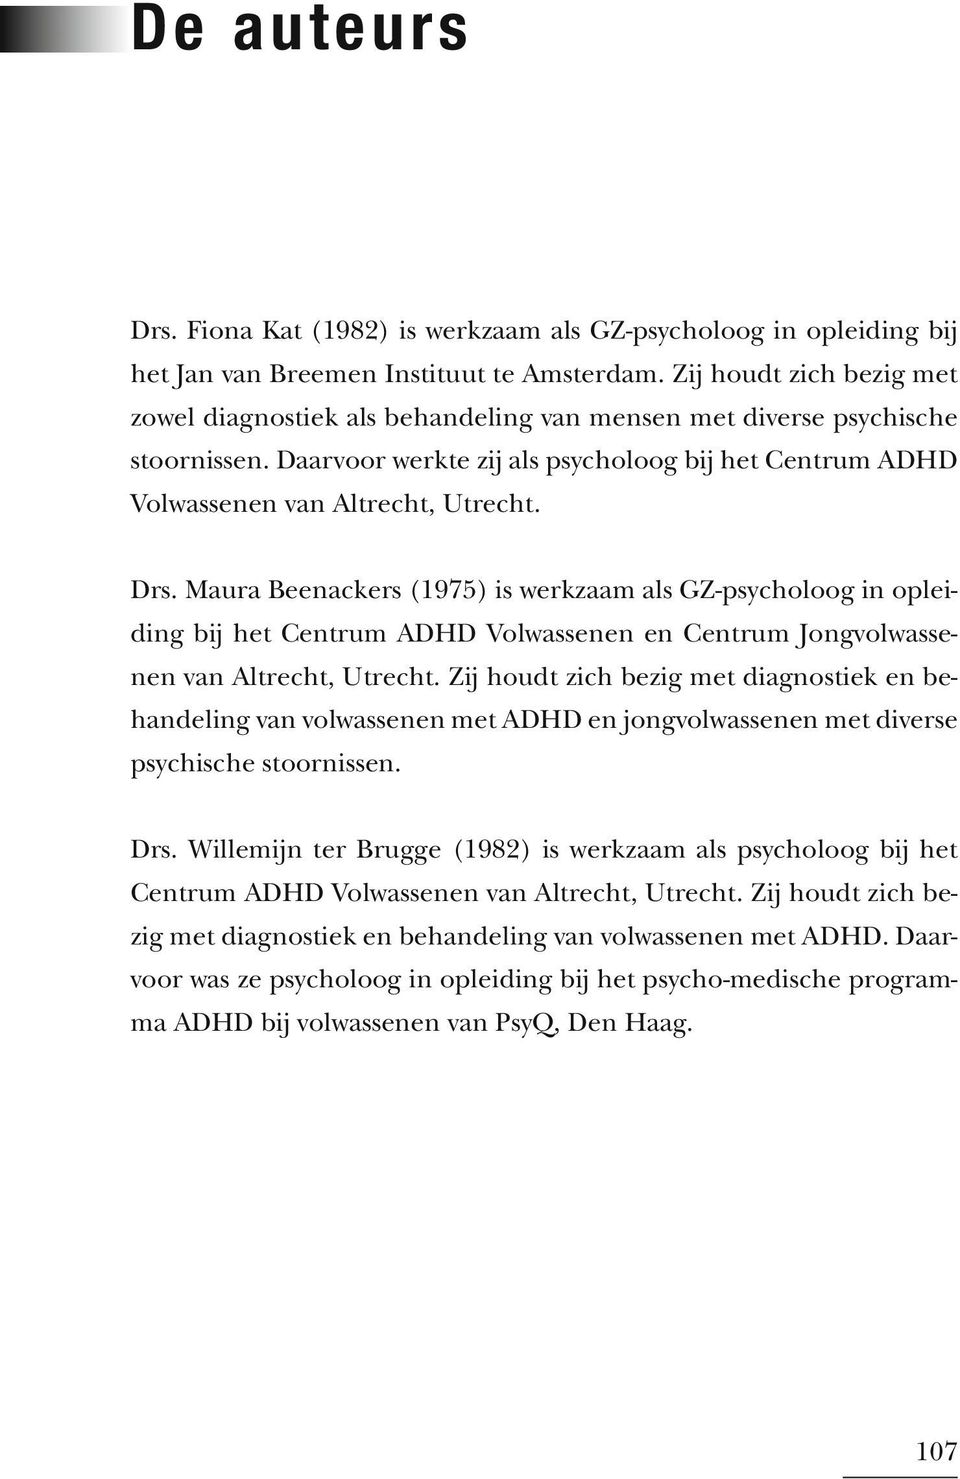 Drs. Maura Beenackers (1975) is werkzaam als GZ-psycholoog in opleiding bij het Centrum ADHD Volwassenen en Centrum Jongvolwassenen van Altrecht, Utrecht.